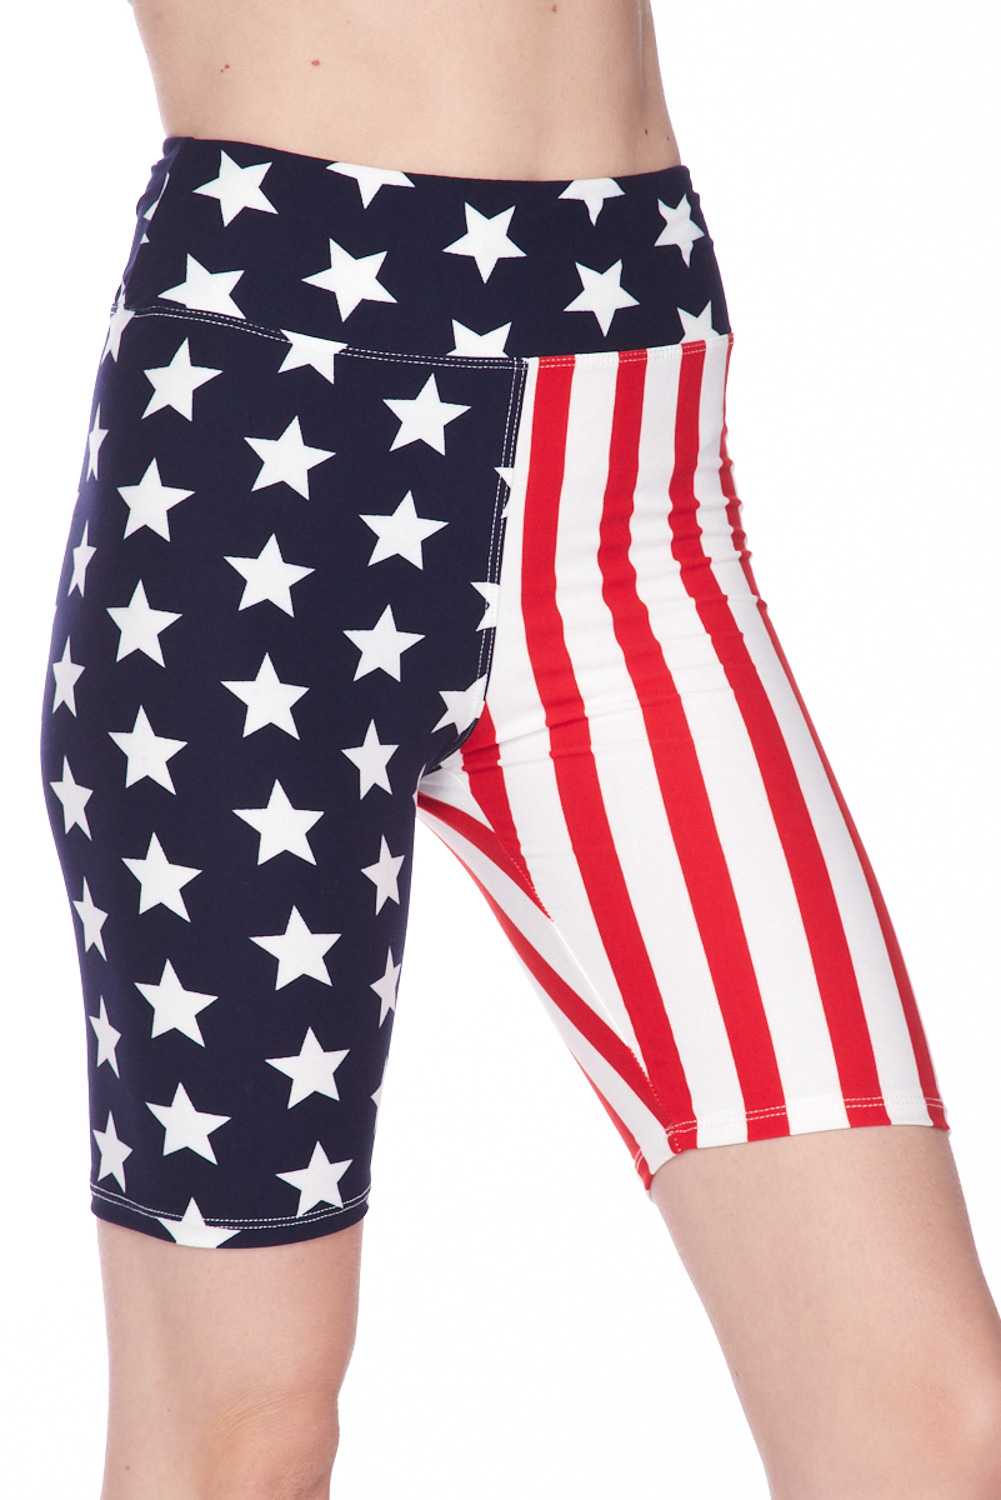 Wholesale Buttery Smooth USA Flag High Waist Biker Shorts - 3 Inch Waist